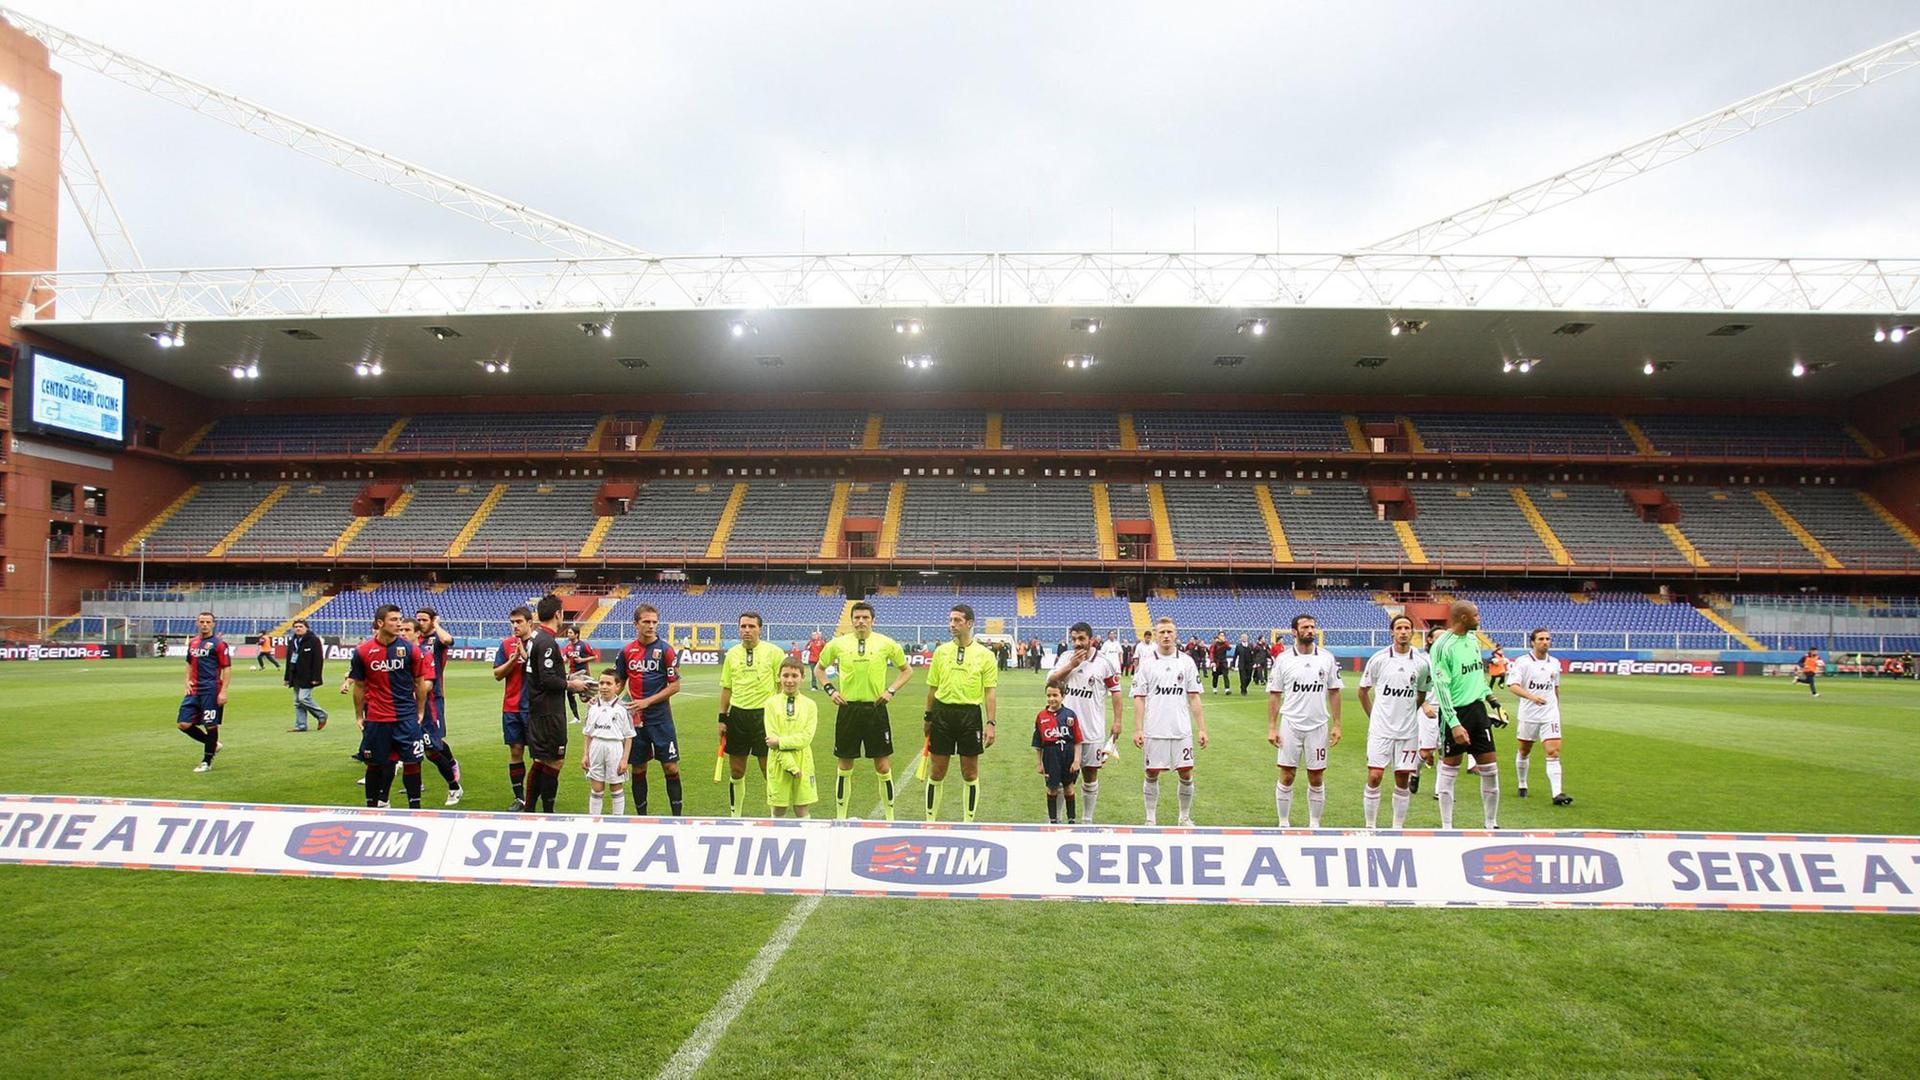 Zu sehen sind die Mannschaften von Genua und Mailand auf dem Rasen, im Hintergrund leere Tribünen.